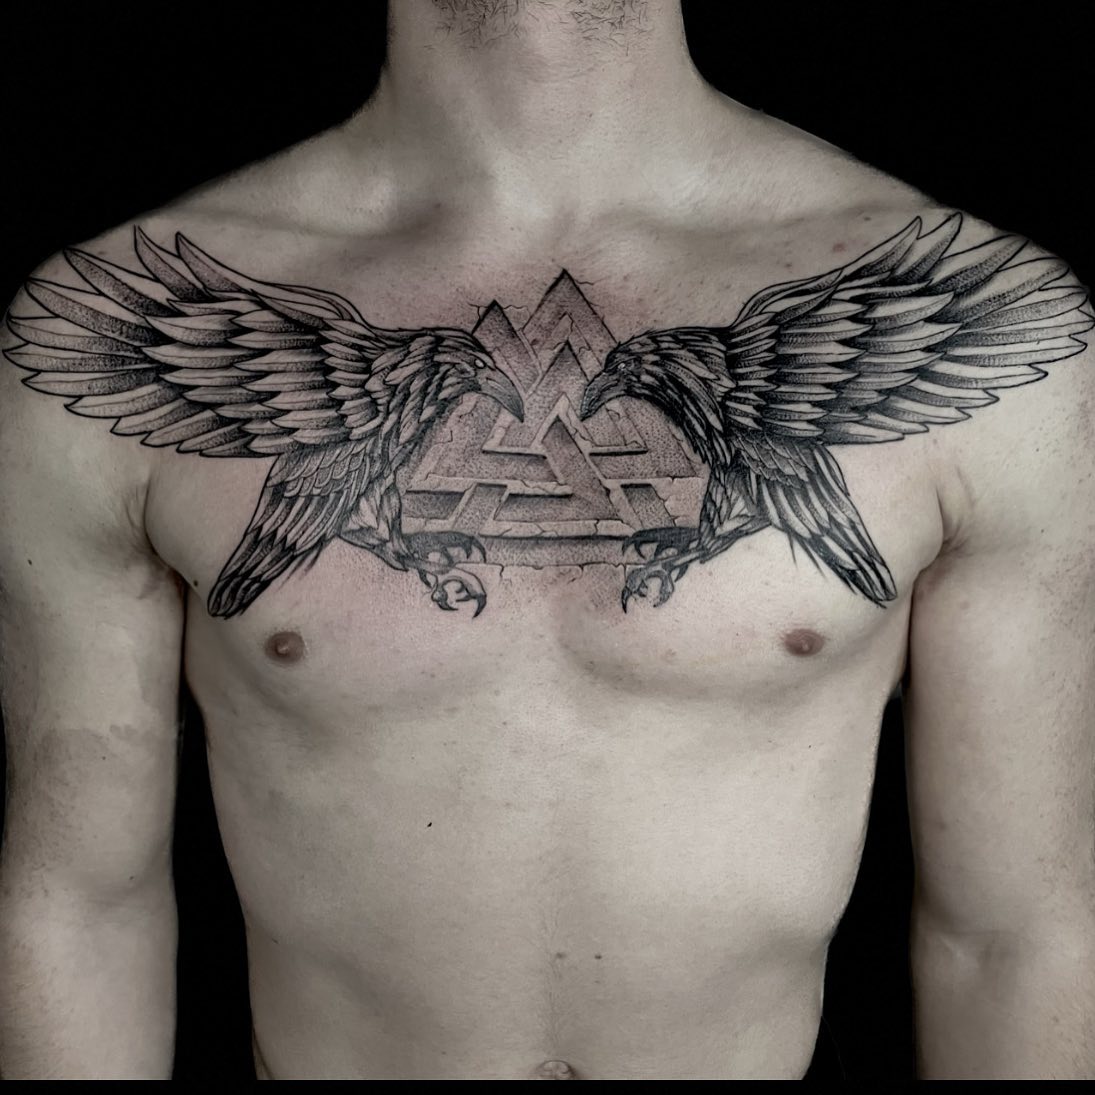 Tatuaż z dwoma krukami na klatce piersiowej